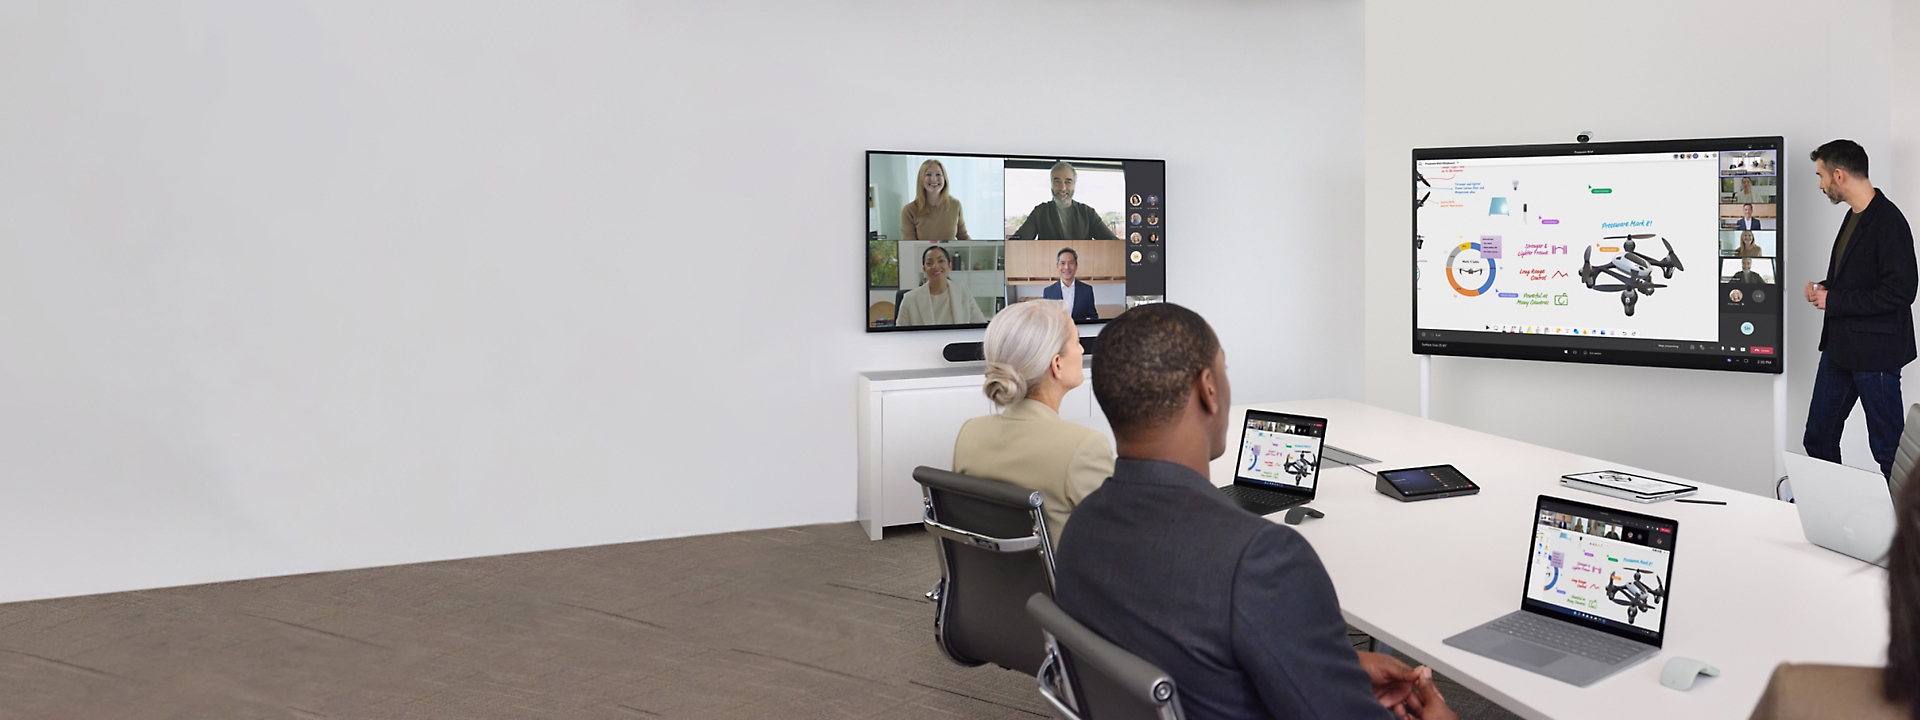 Gente en una sala de conferencias teniendo una reunión con una televisión que muestra una videollamada de Teams y otra que muestra una presentación.